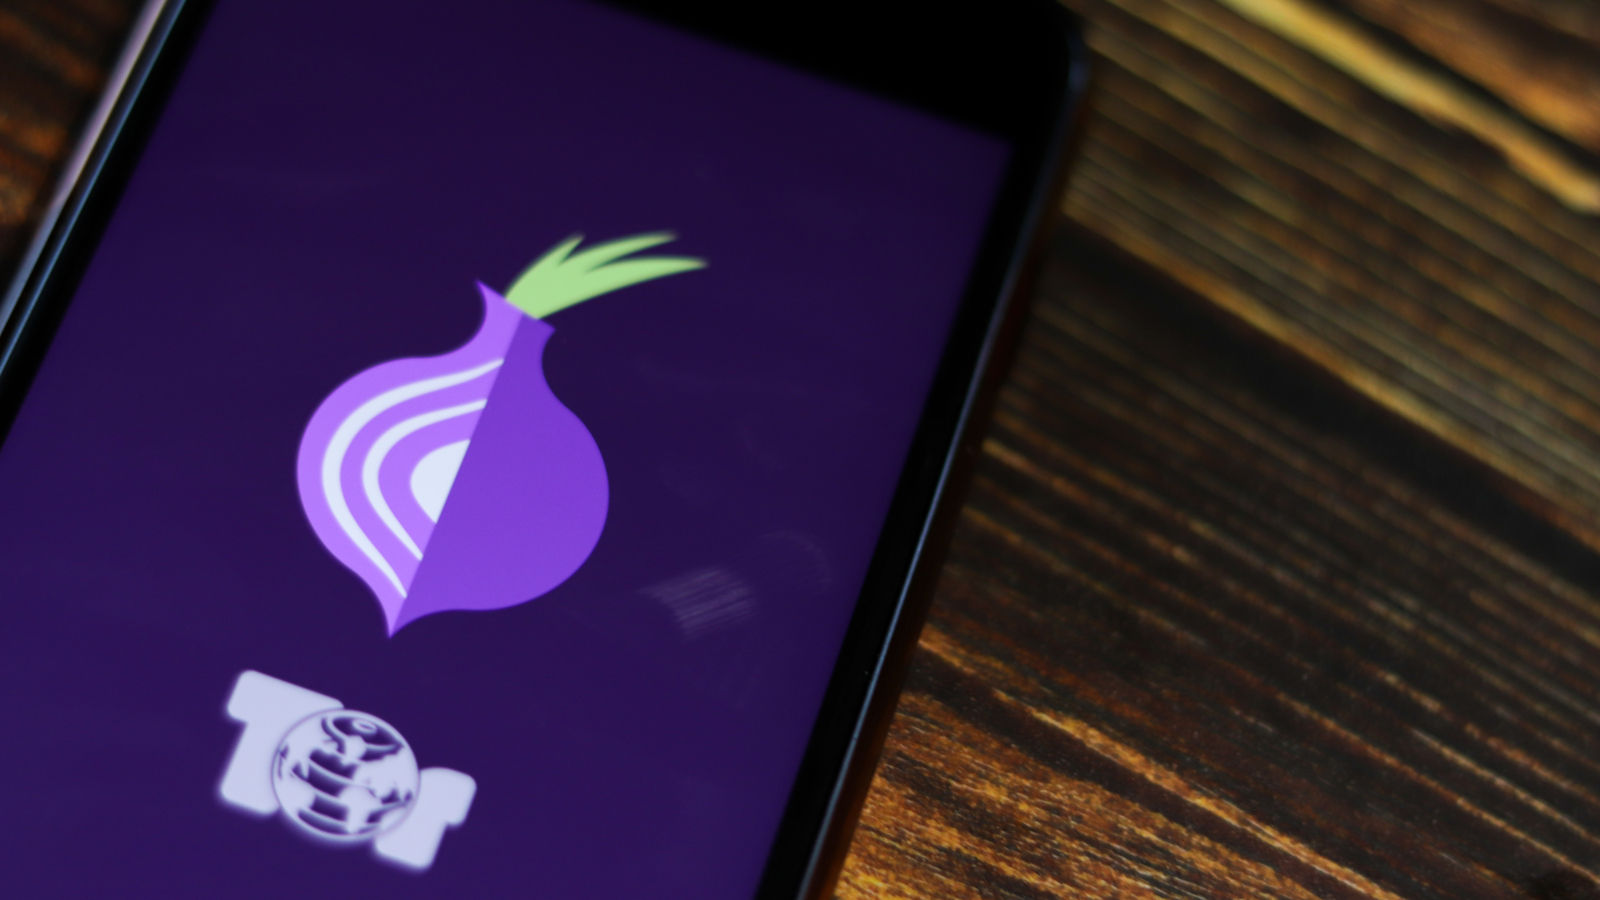 اضطر "مشروع Tor" إلى تسريح الموظفين بسبب COVID-19 222